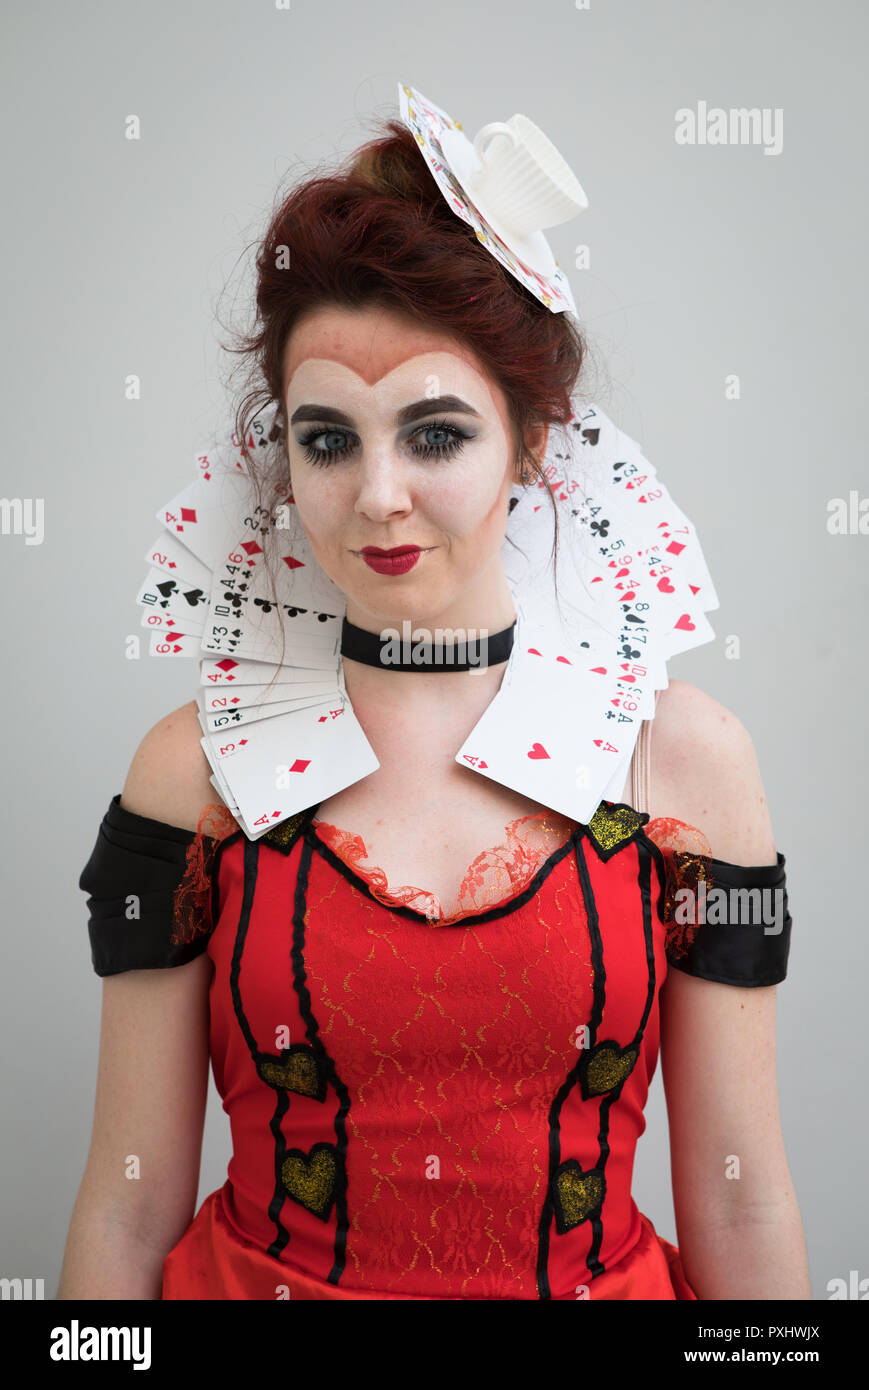 Reina de corazones cosplay fotografías e imágenes de alta resolución - Alamy